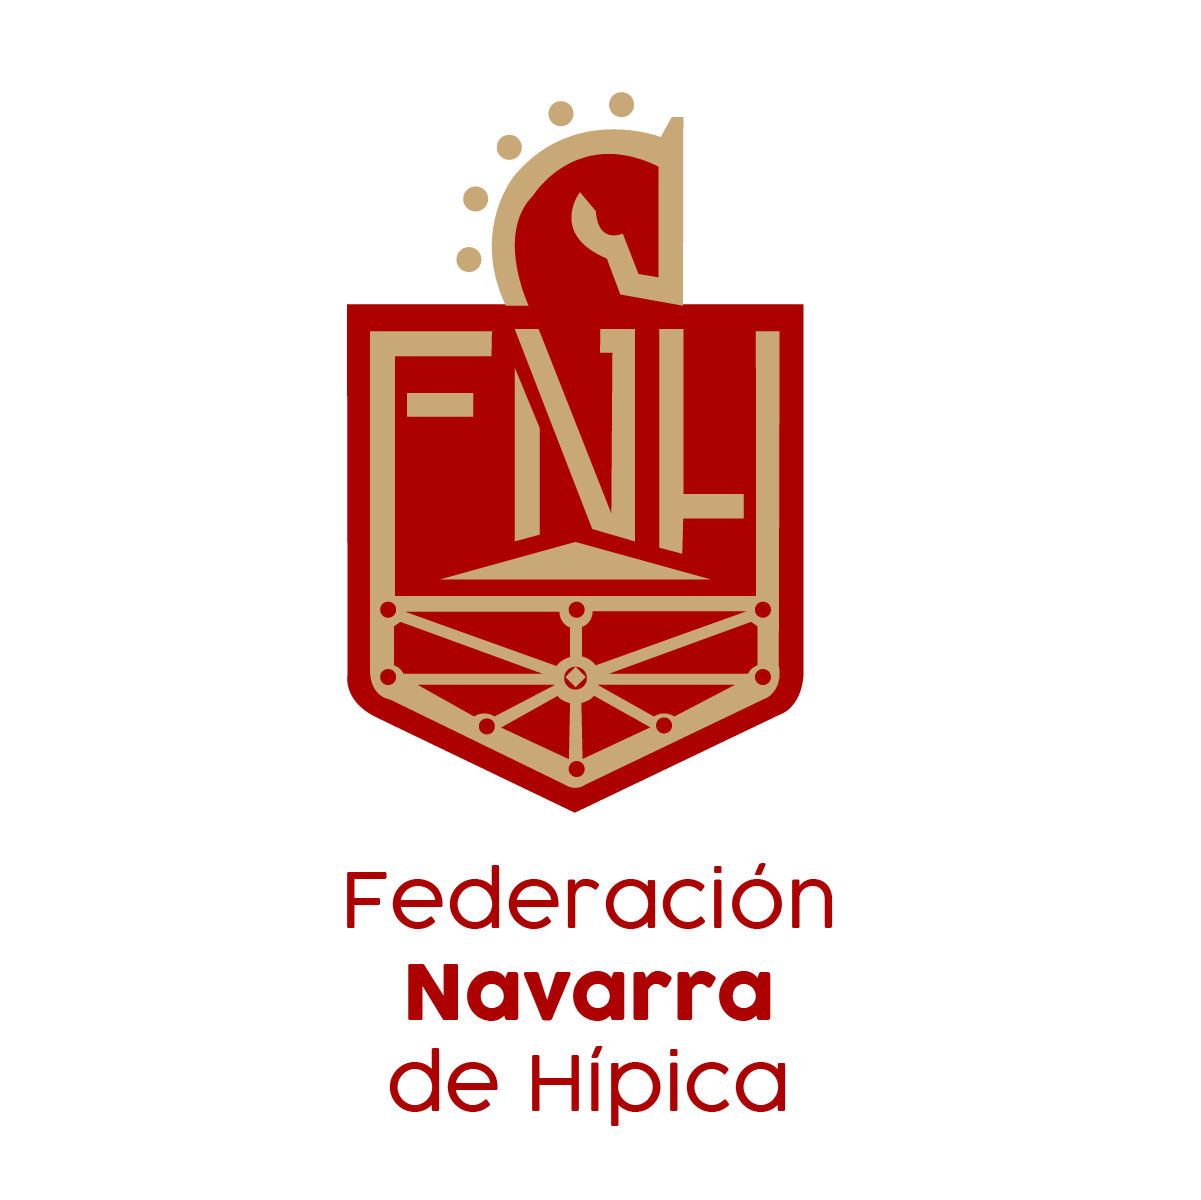 El próximo lunes, día 26, podremos escuchar a Manolo Sánchez  Vocal Raid FNH  en Radio Universidad, 98.3 FM, a las 13.35 h y 20.30h.